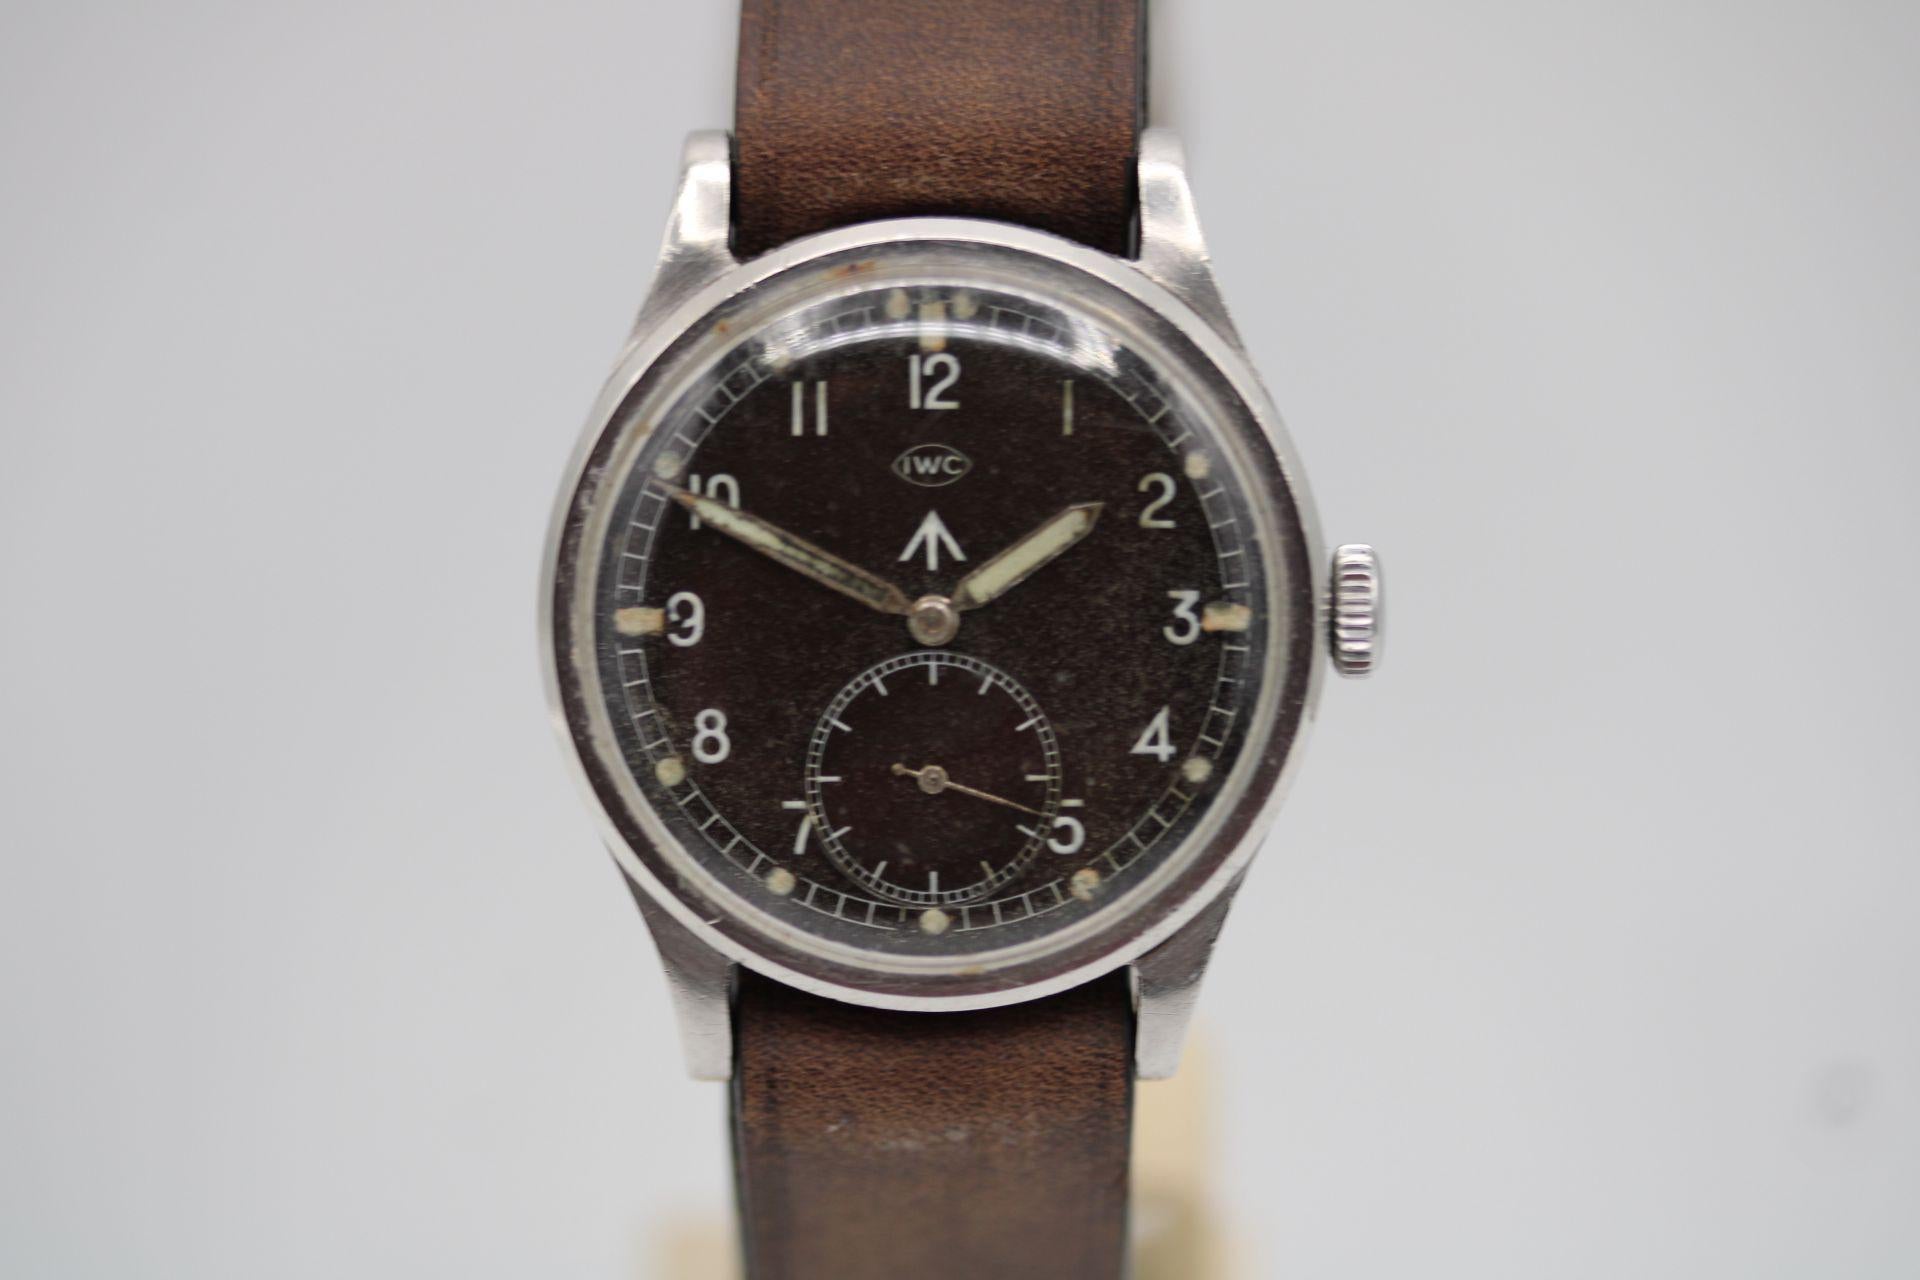 Si vous cherchez cette montre, vous savez de quoi il s'agit, sinon il s'agit brièvement de l'une des douze montres fabriquées par les horlogers suisses pour l'armée britannique pendant la Seconde Guerre mondiale.

Nous sommes honnêtes et francs à